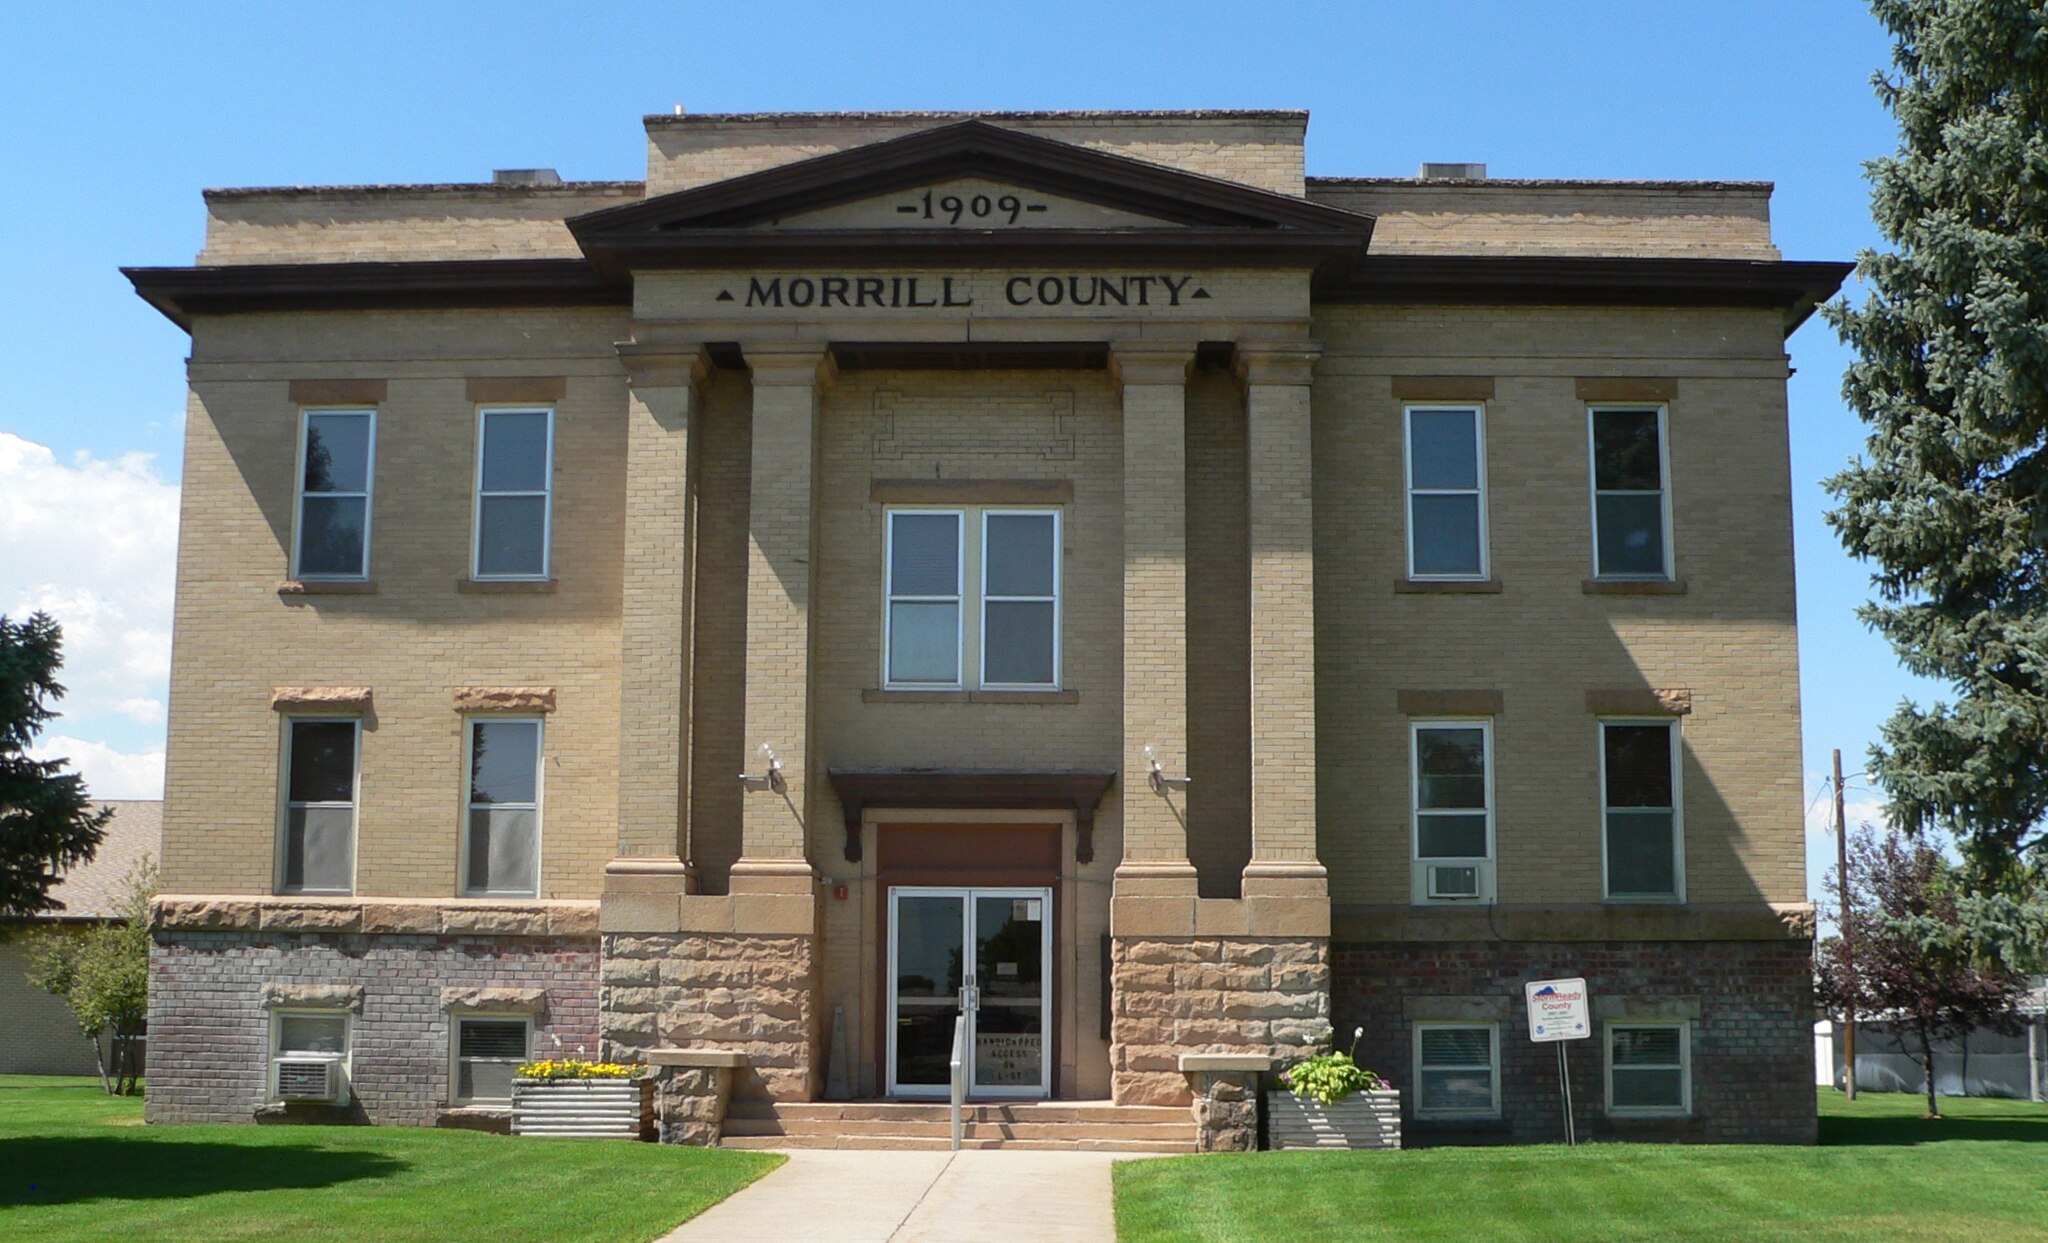 Morrill County, Nebraska courthouse from E 1